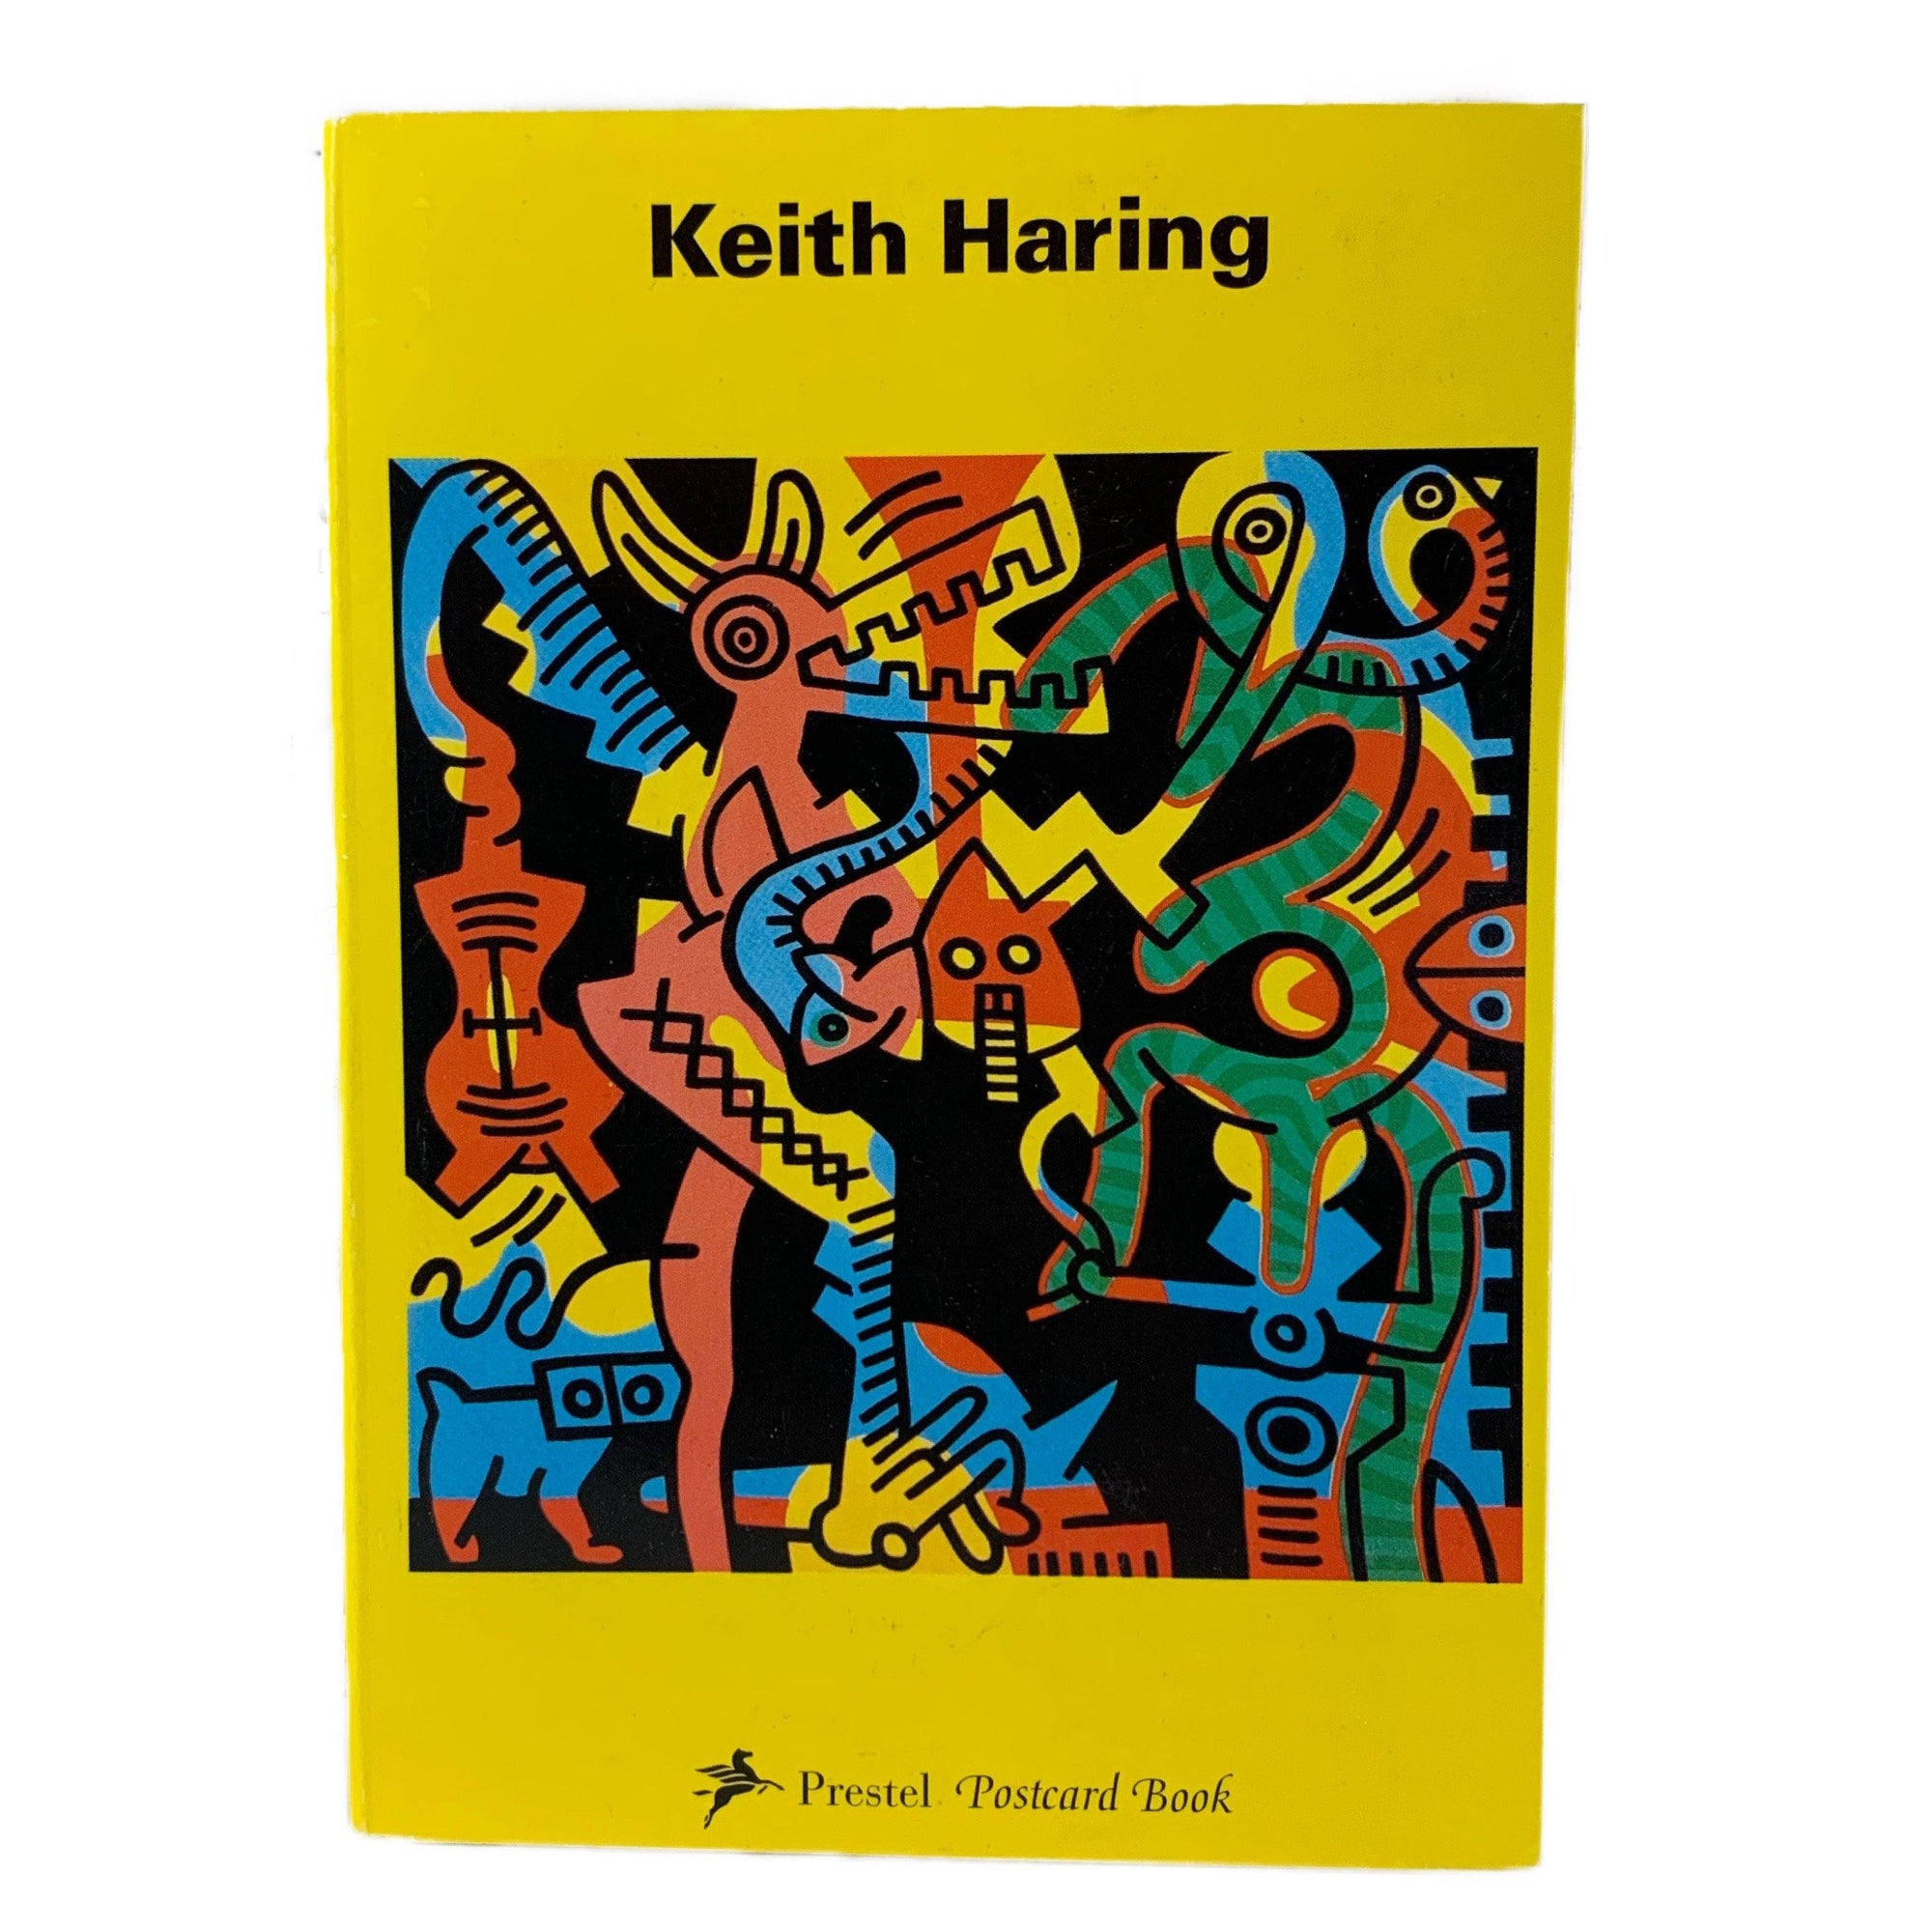 Vintage Keith Haring "Prestel" Postcard Book - jointcustodydc